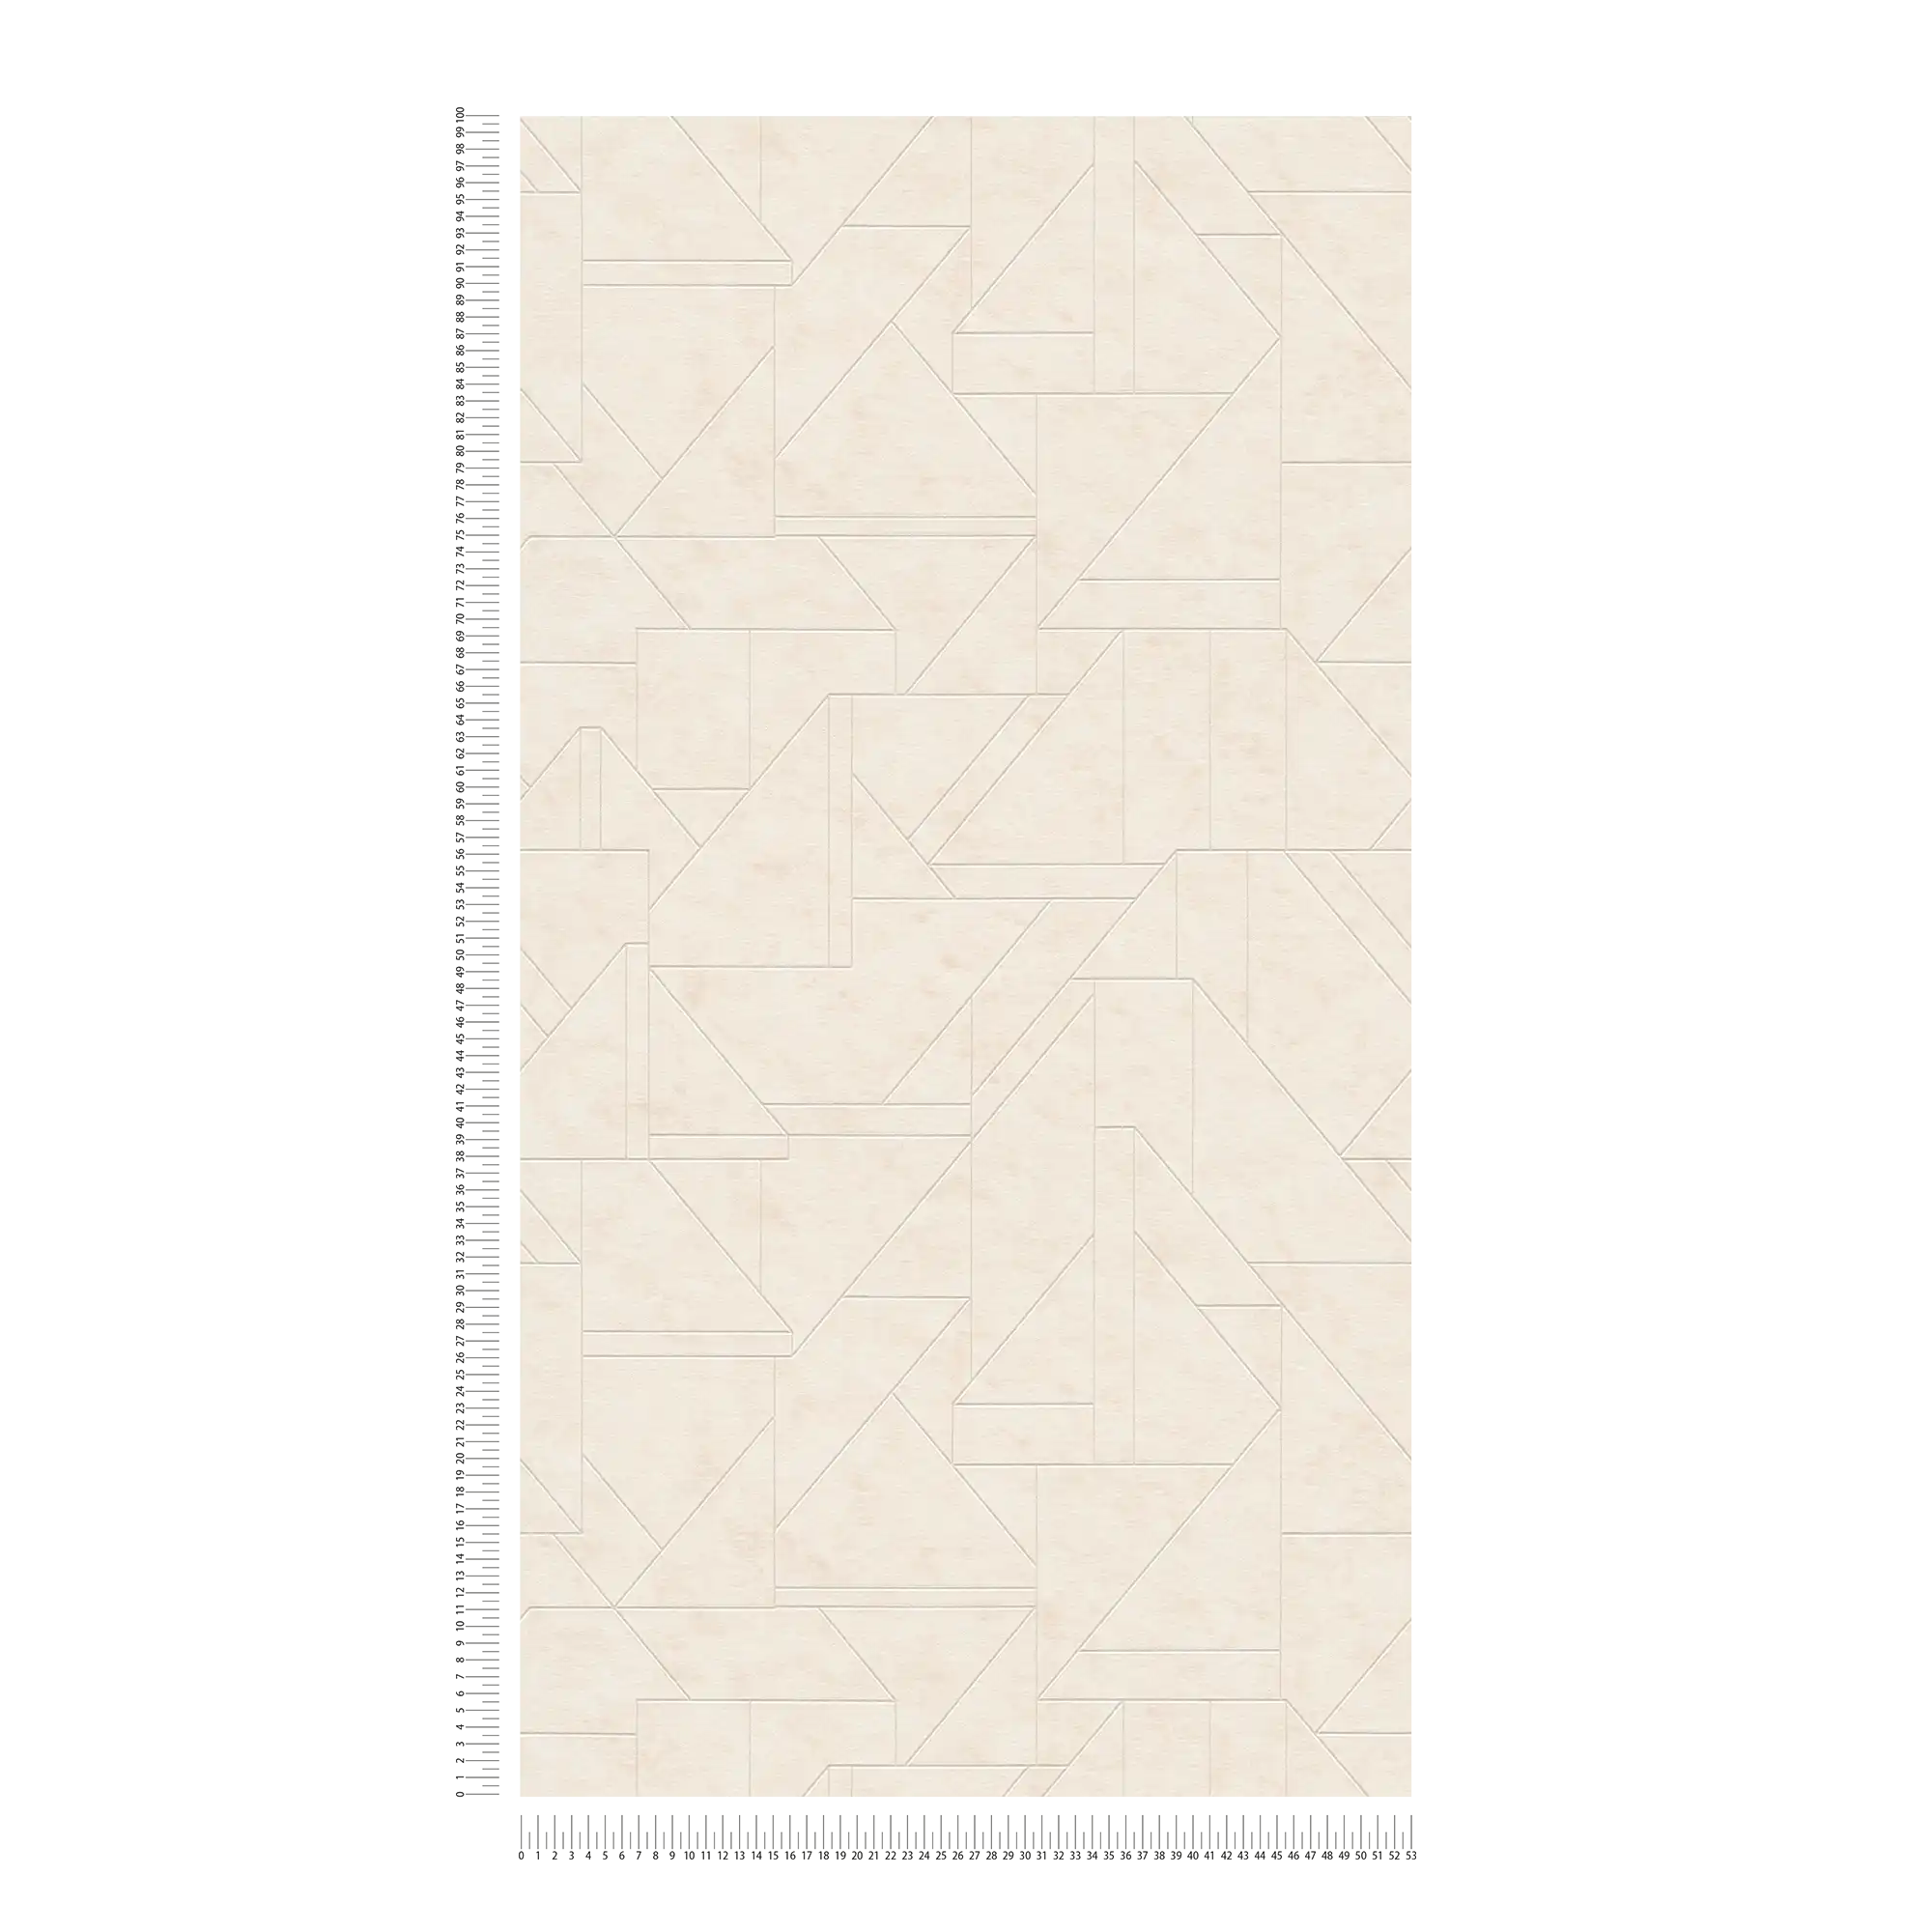             Vliesbehang met grafisch lijnenspel - crème, wit, zilver
        